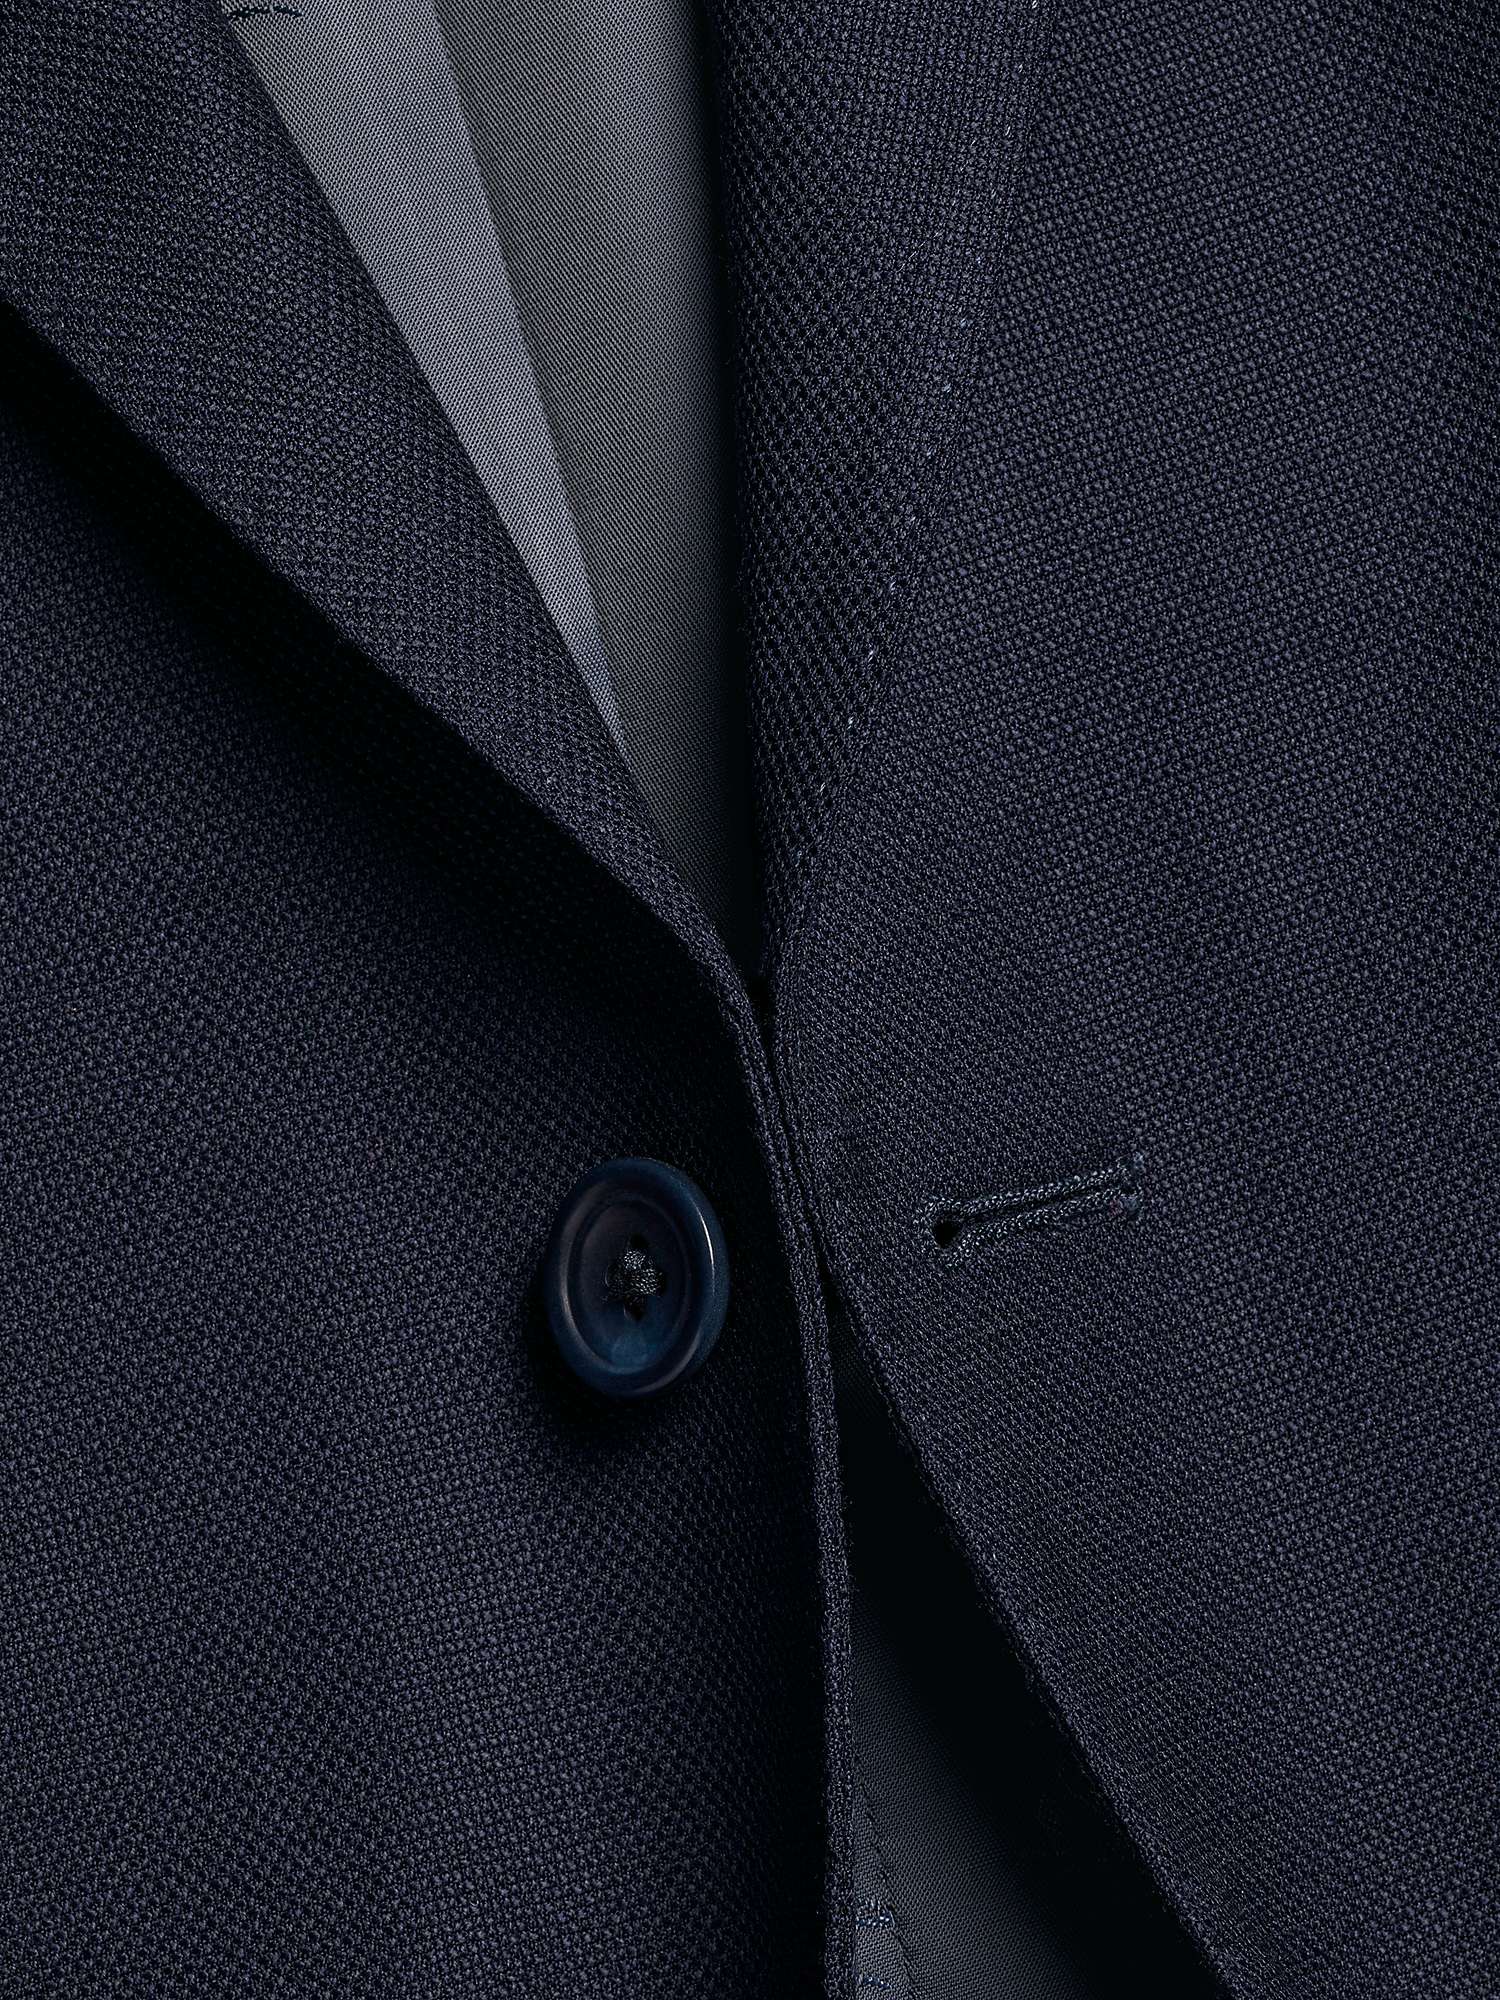 Buy Charles Tyrwhitt Luxury Italian Slim Fit Suit Jacket, Navy Online at johnlewis.com